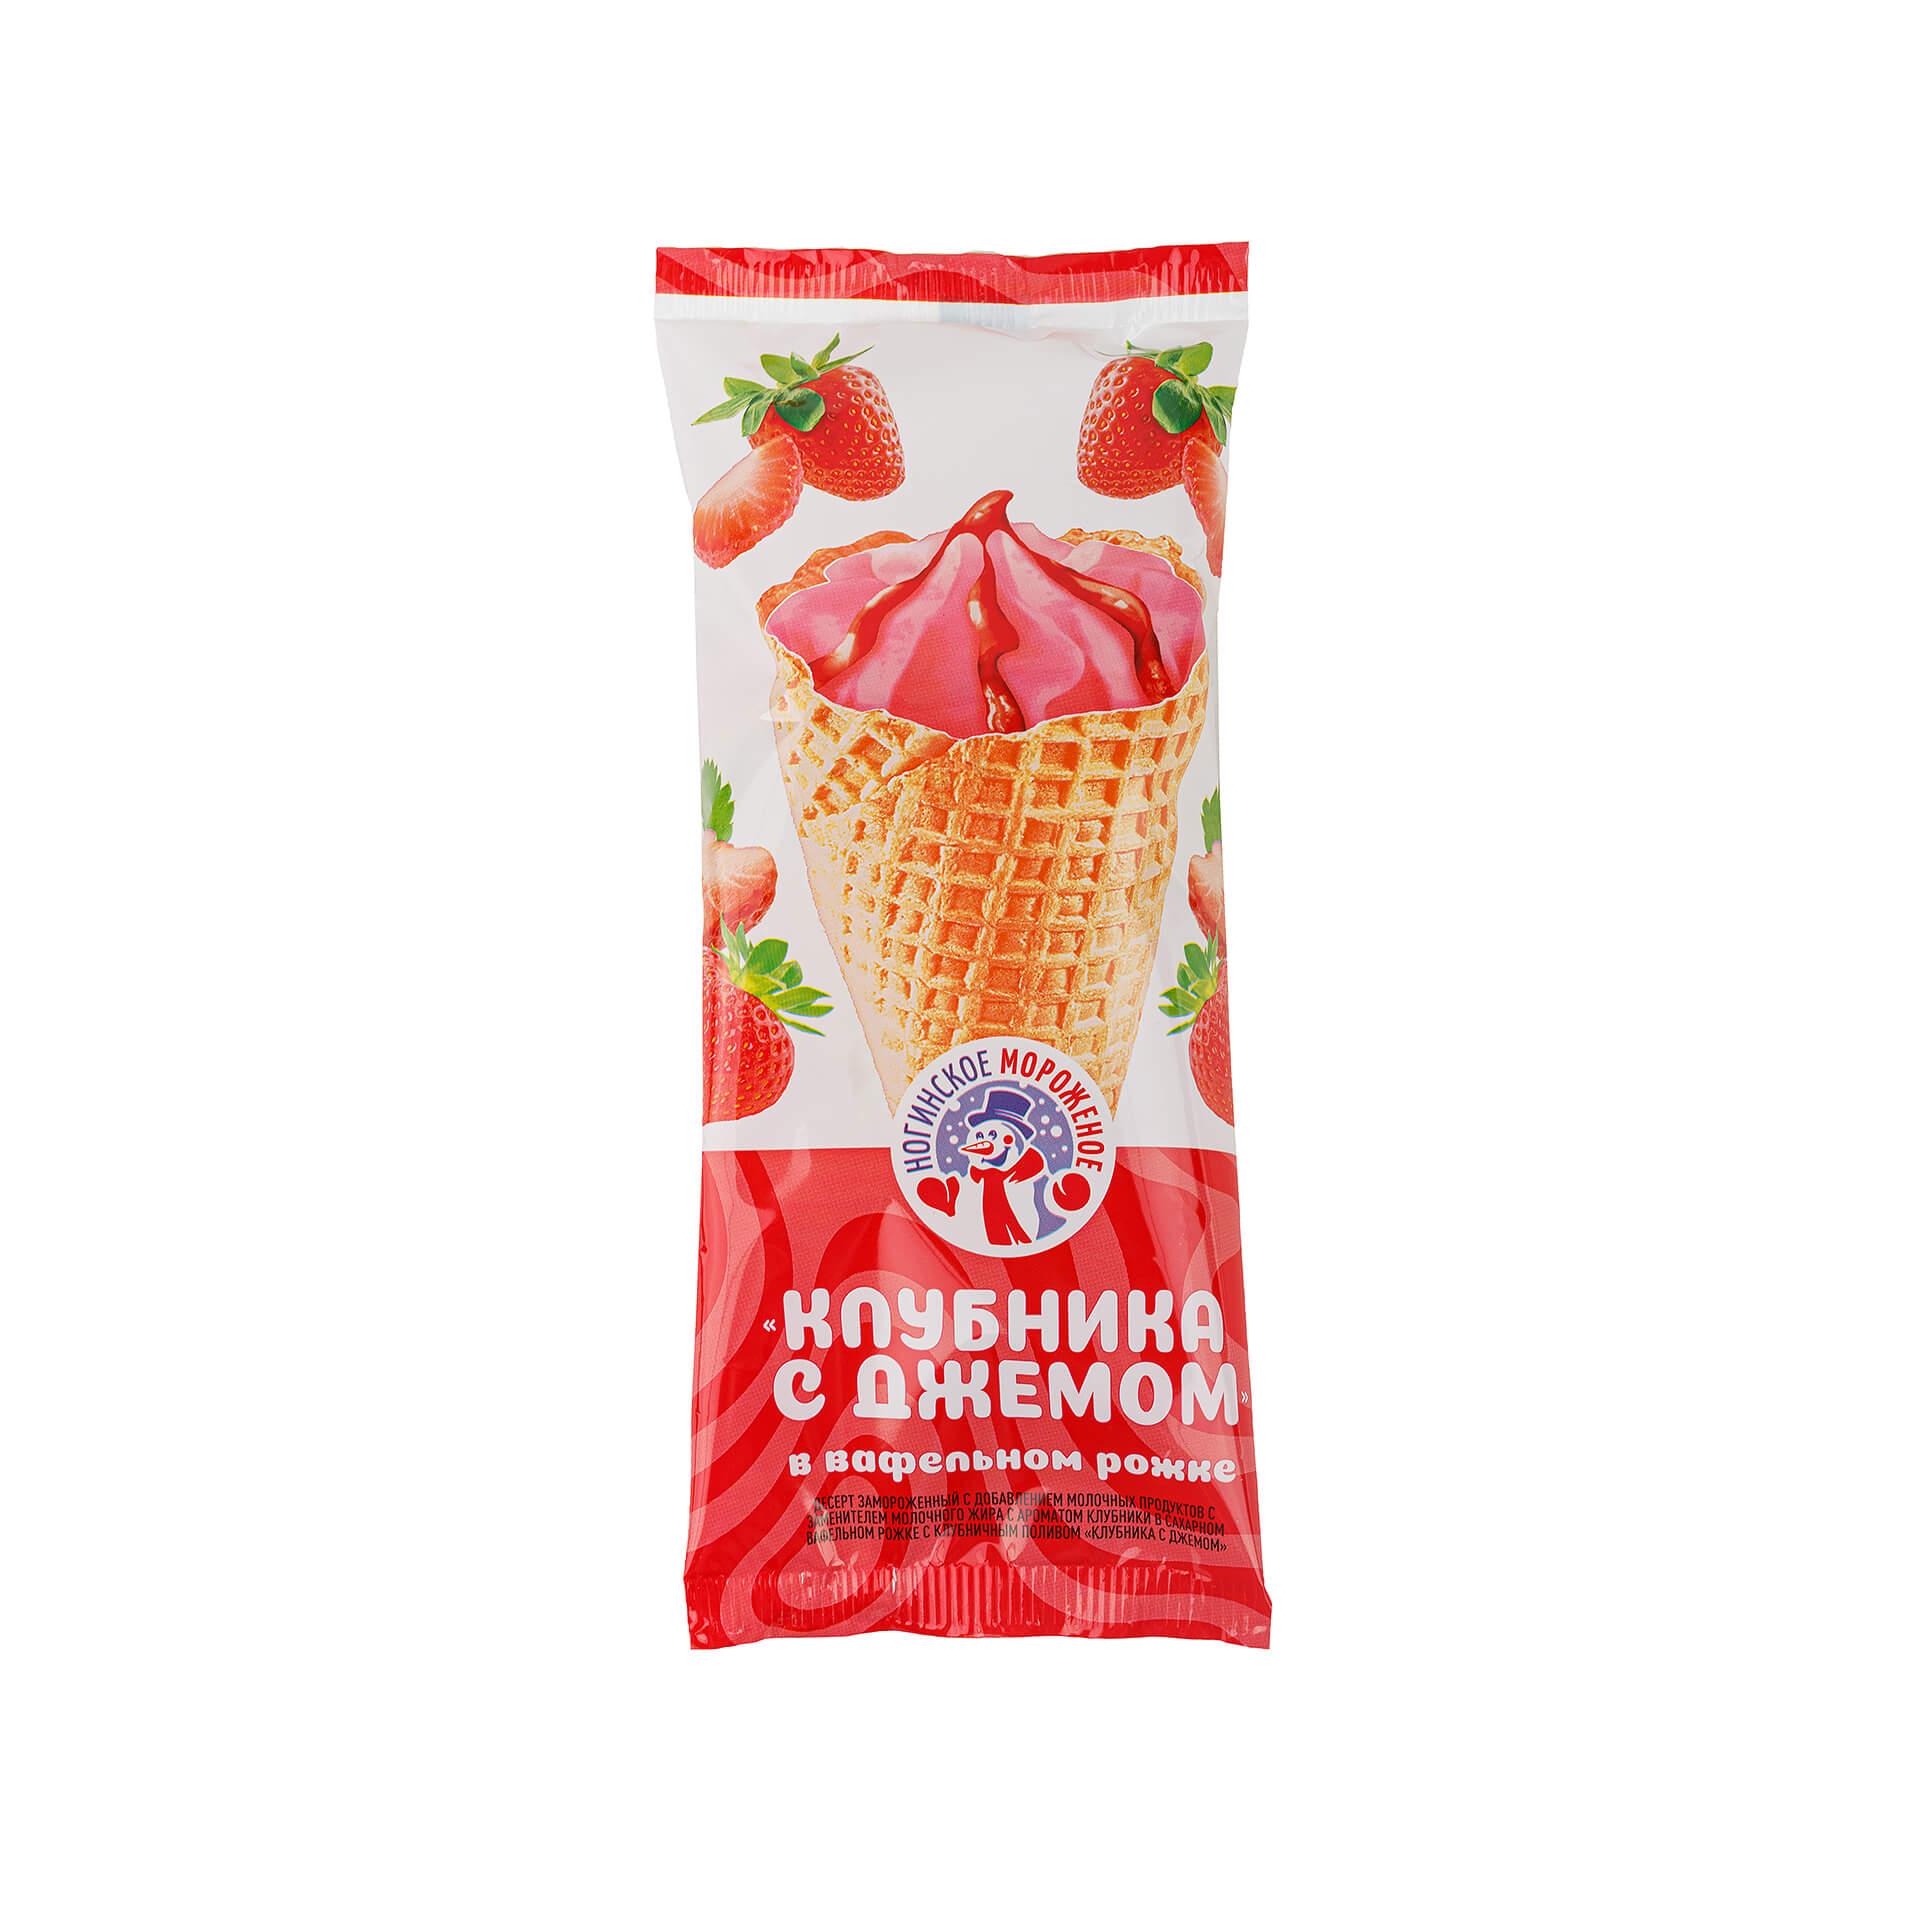 Мороженое Ногинское мороженое Клубника с джемом рожок 100 гр., флоу-пак